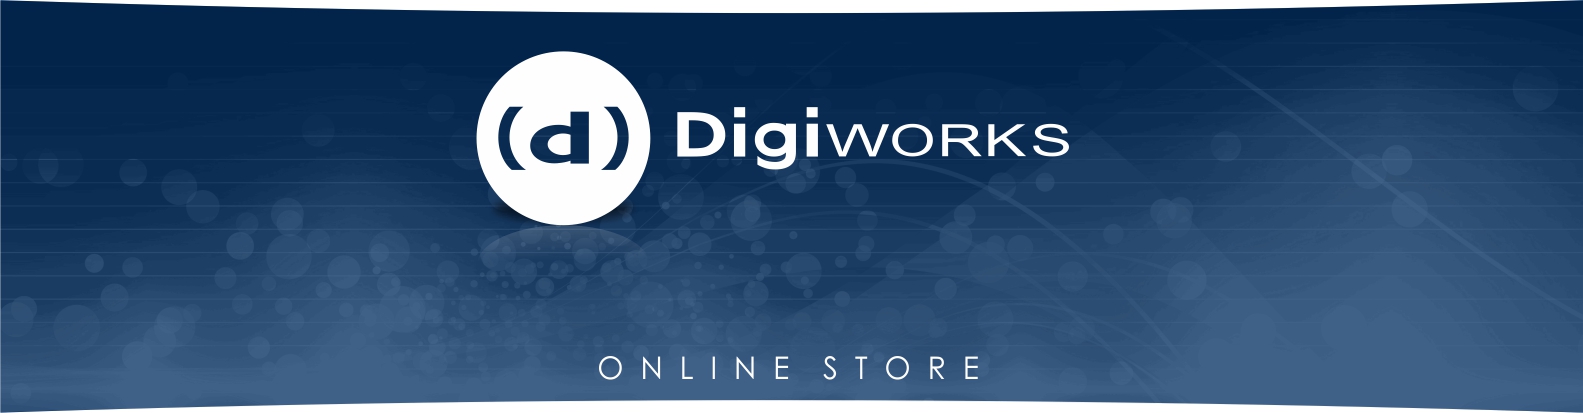 Digiworks Online Store